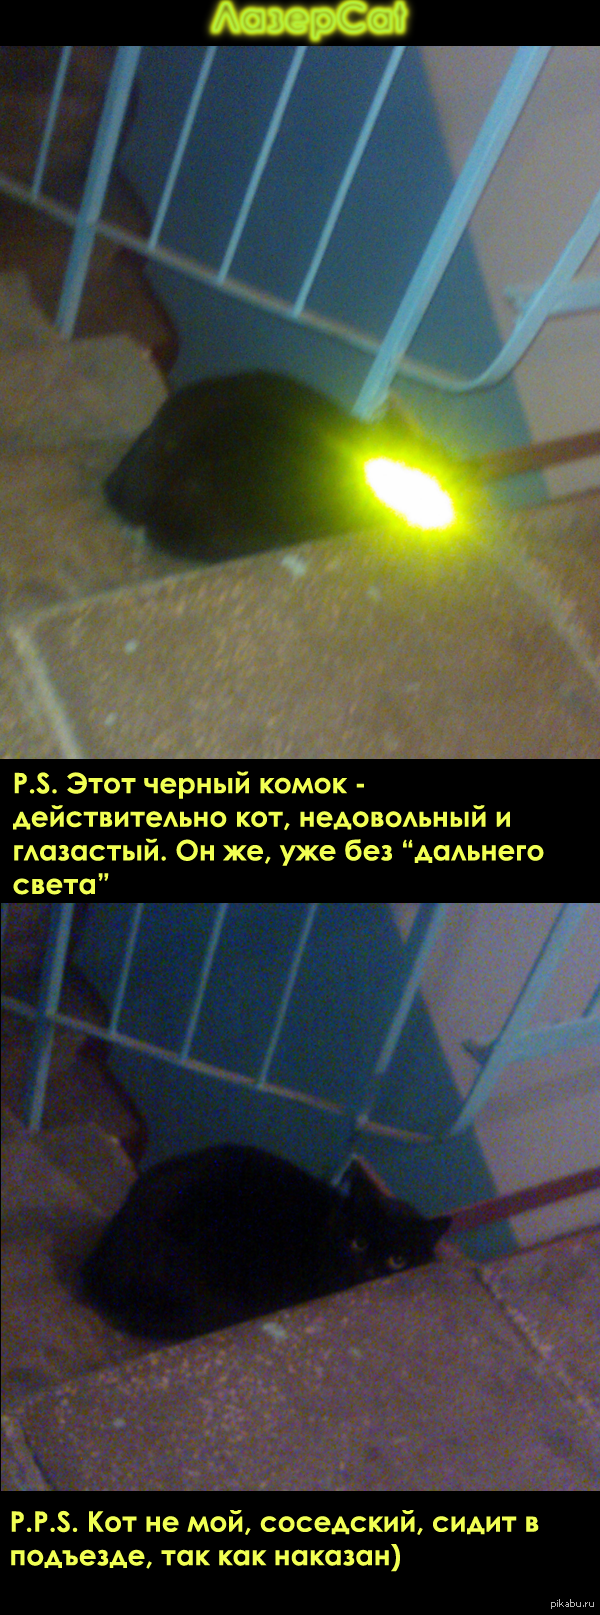 Cat     <a href="http://pikabu.ru/story/myi_prosto_sfotali_svoego_kota_kogda_igrali_s_nim_2451524">http://pikabu.ru/story/_2451524</a>      )